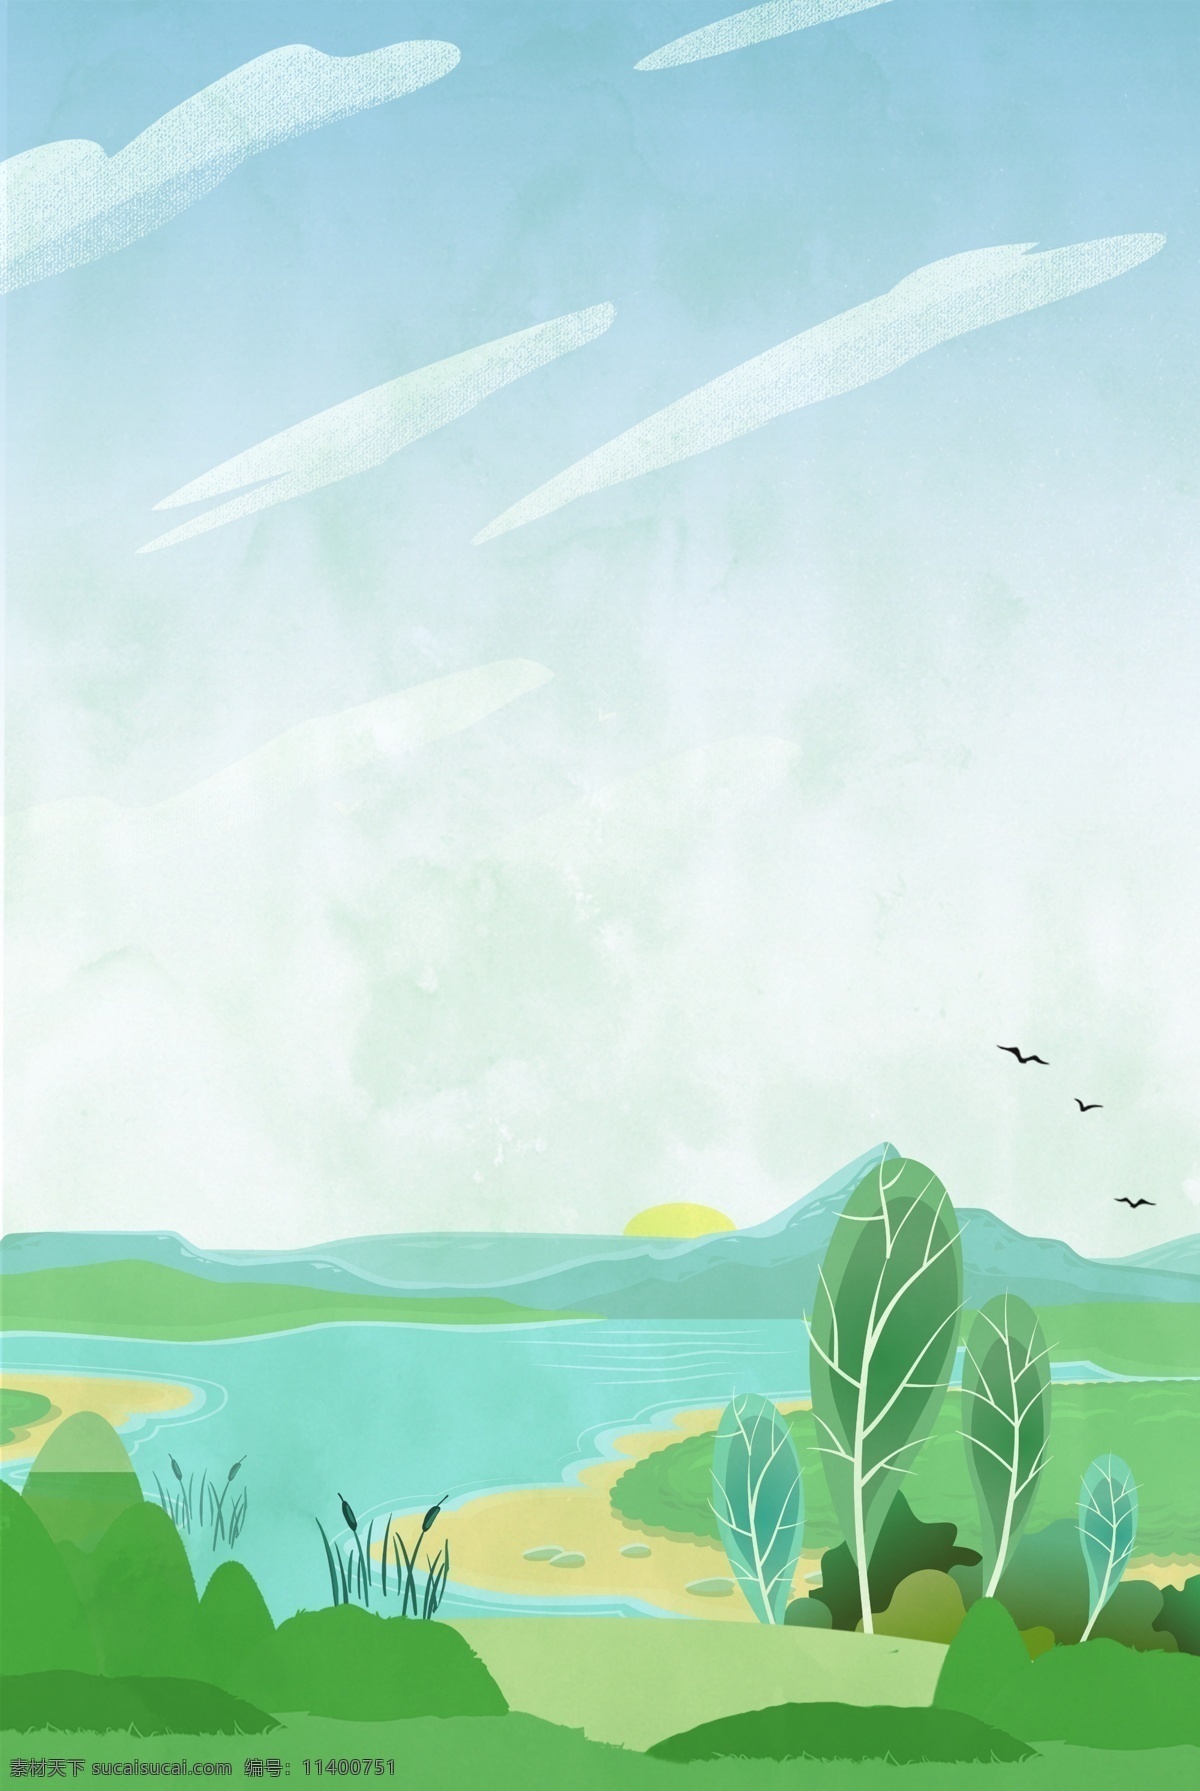 卡通 绿色 湿地 公园 背景 海报 环境保护 矢量 简约 白鹭 河塘 芦苇